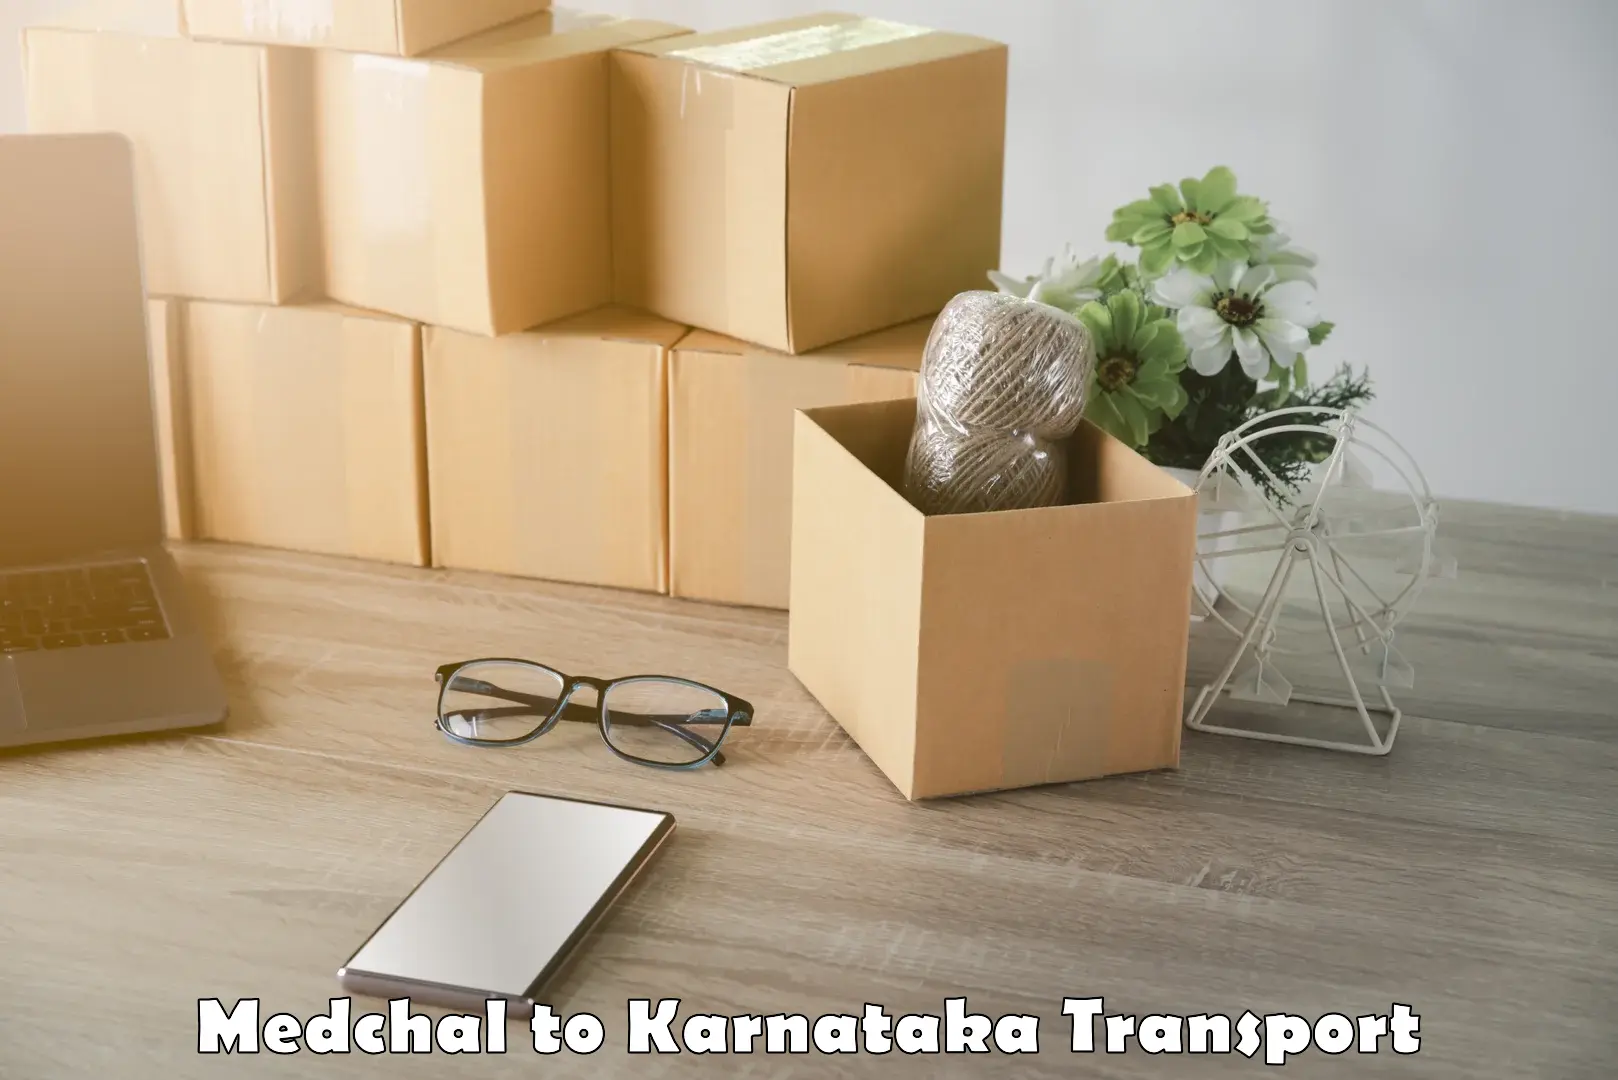 Online transport service Medchal to Karkala